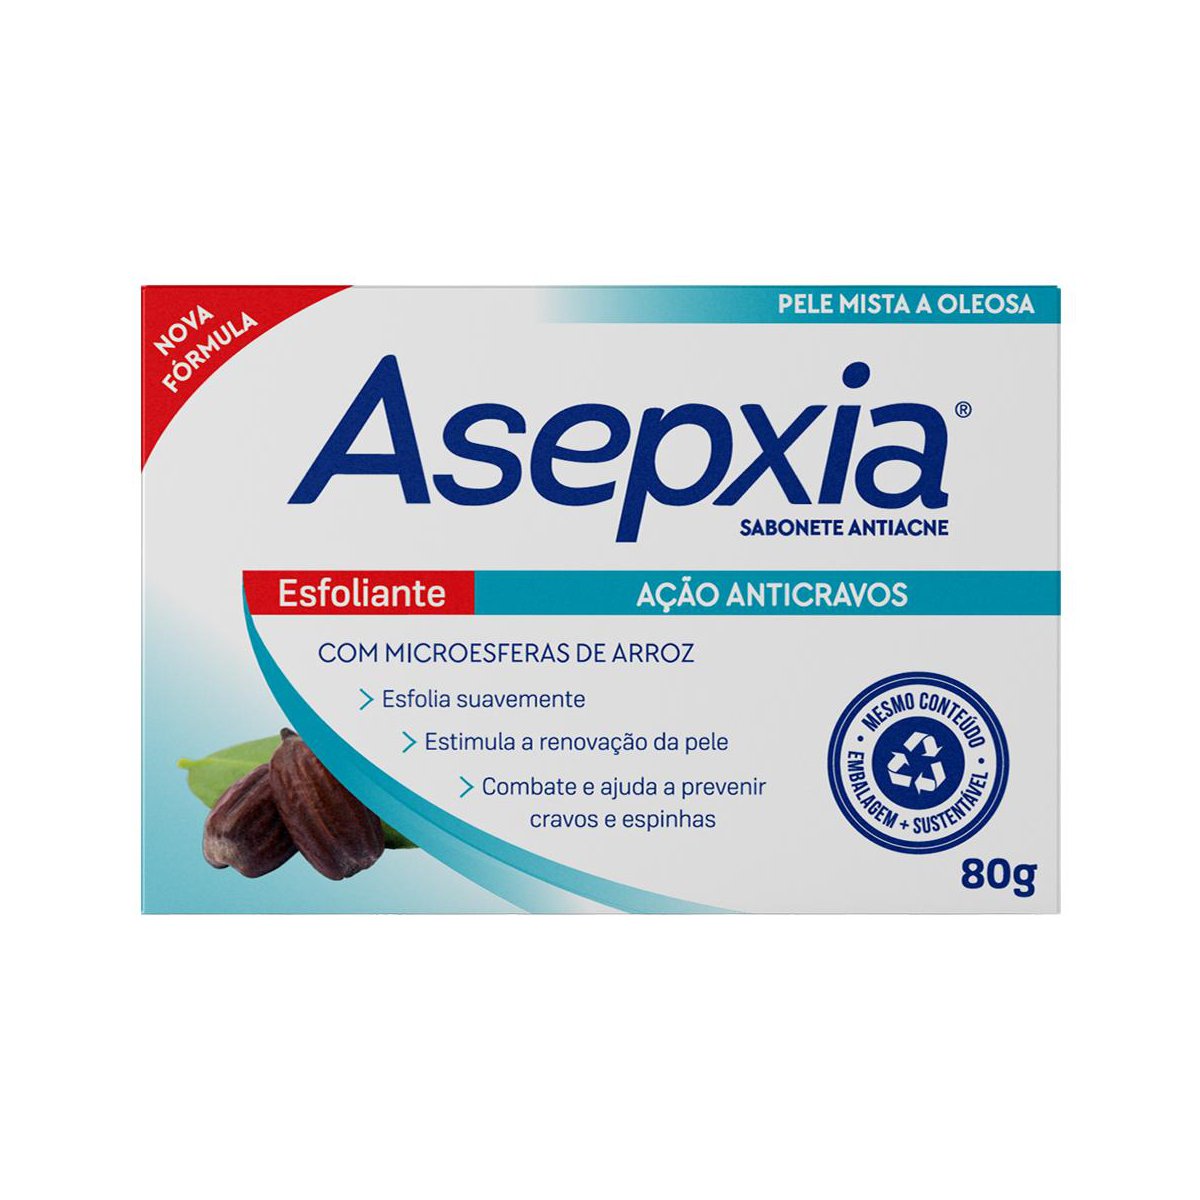 Sabonete em Barra Asepxia Esfoliante Acao Anticravos 80g